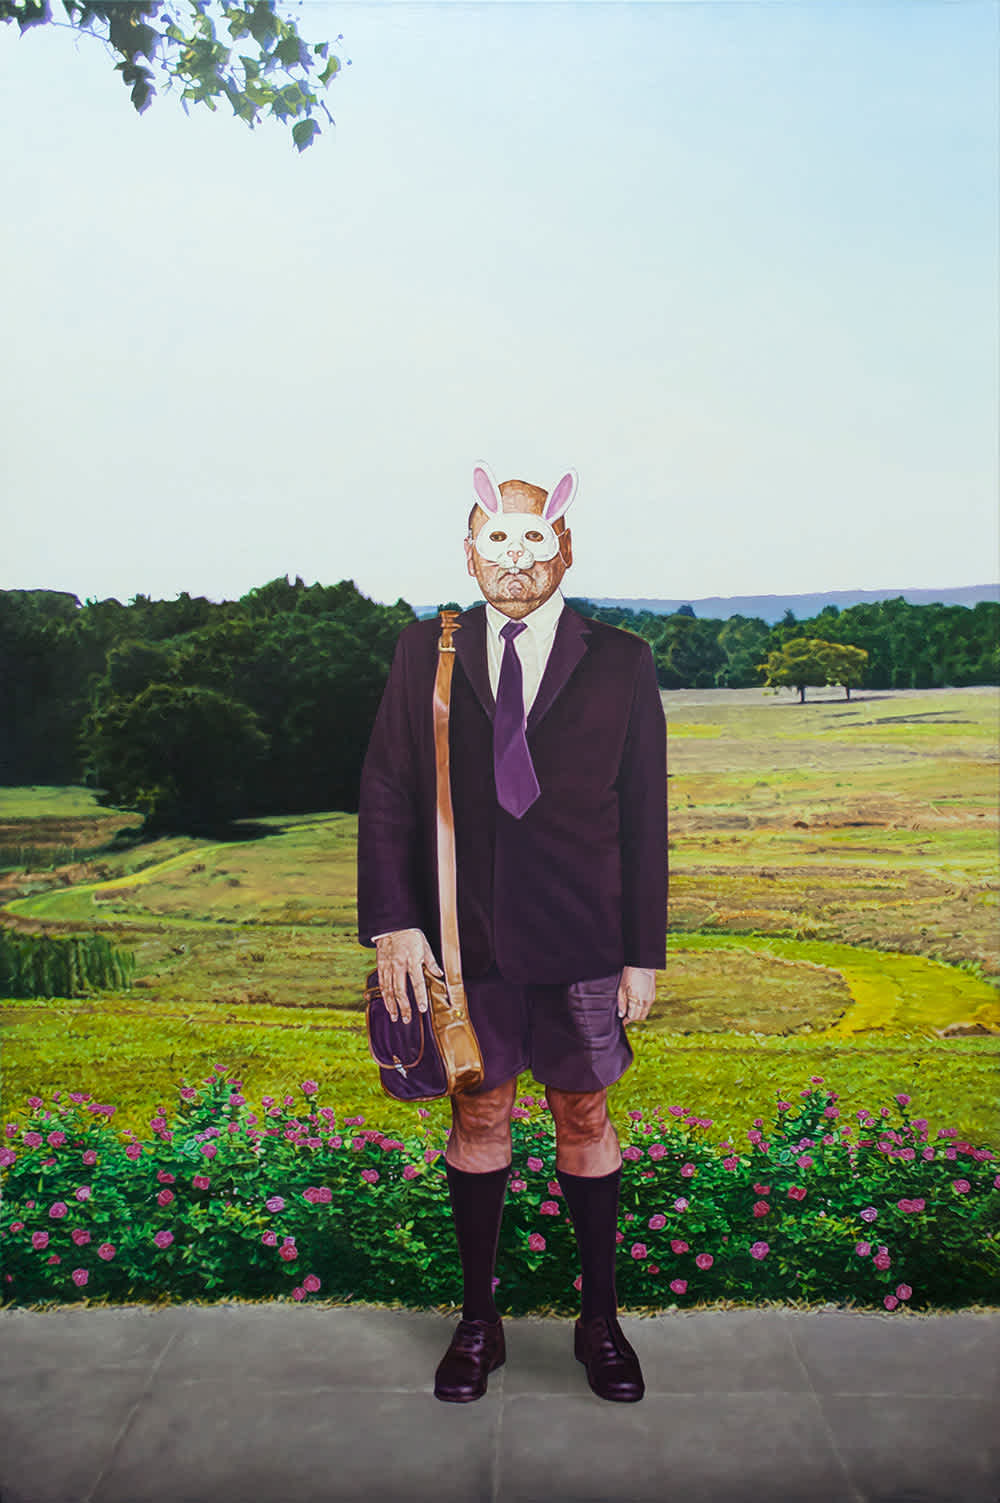 rabbitmask-landscape-suit-person-painting